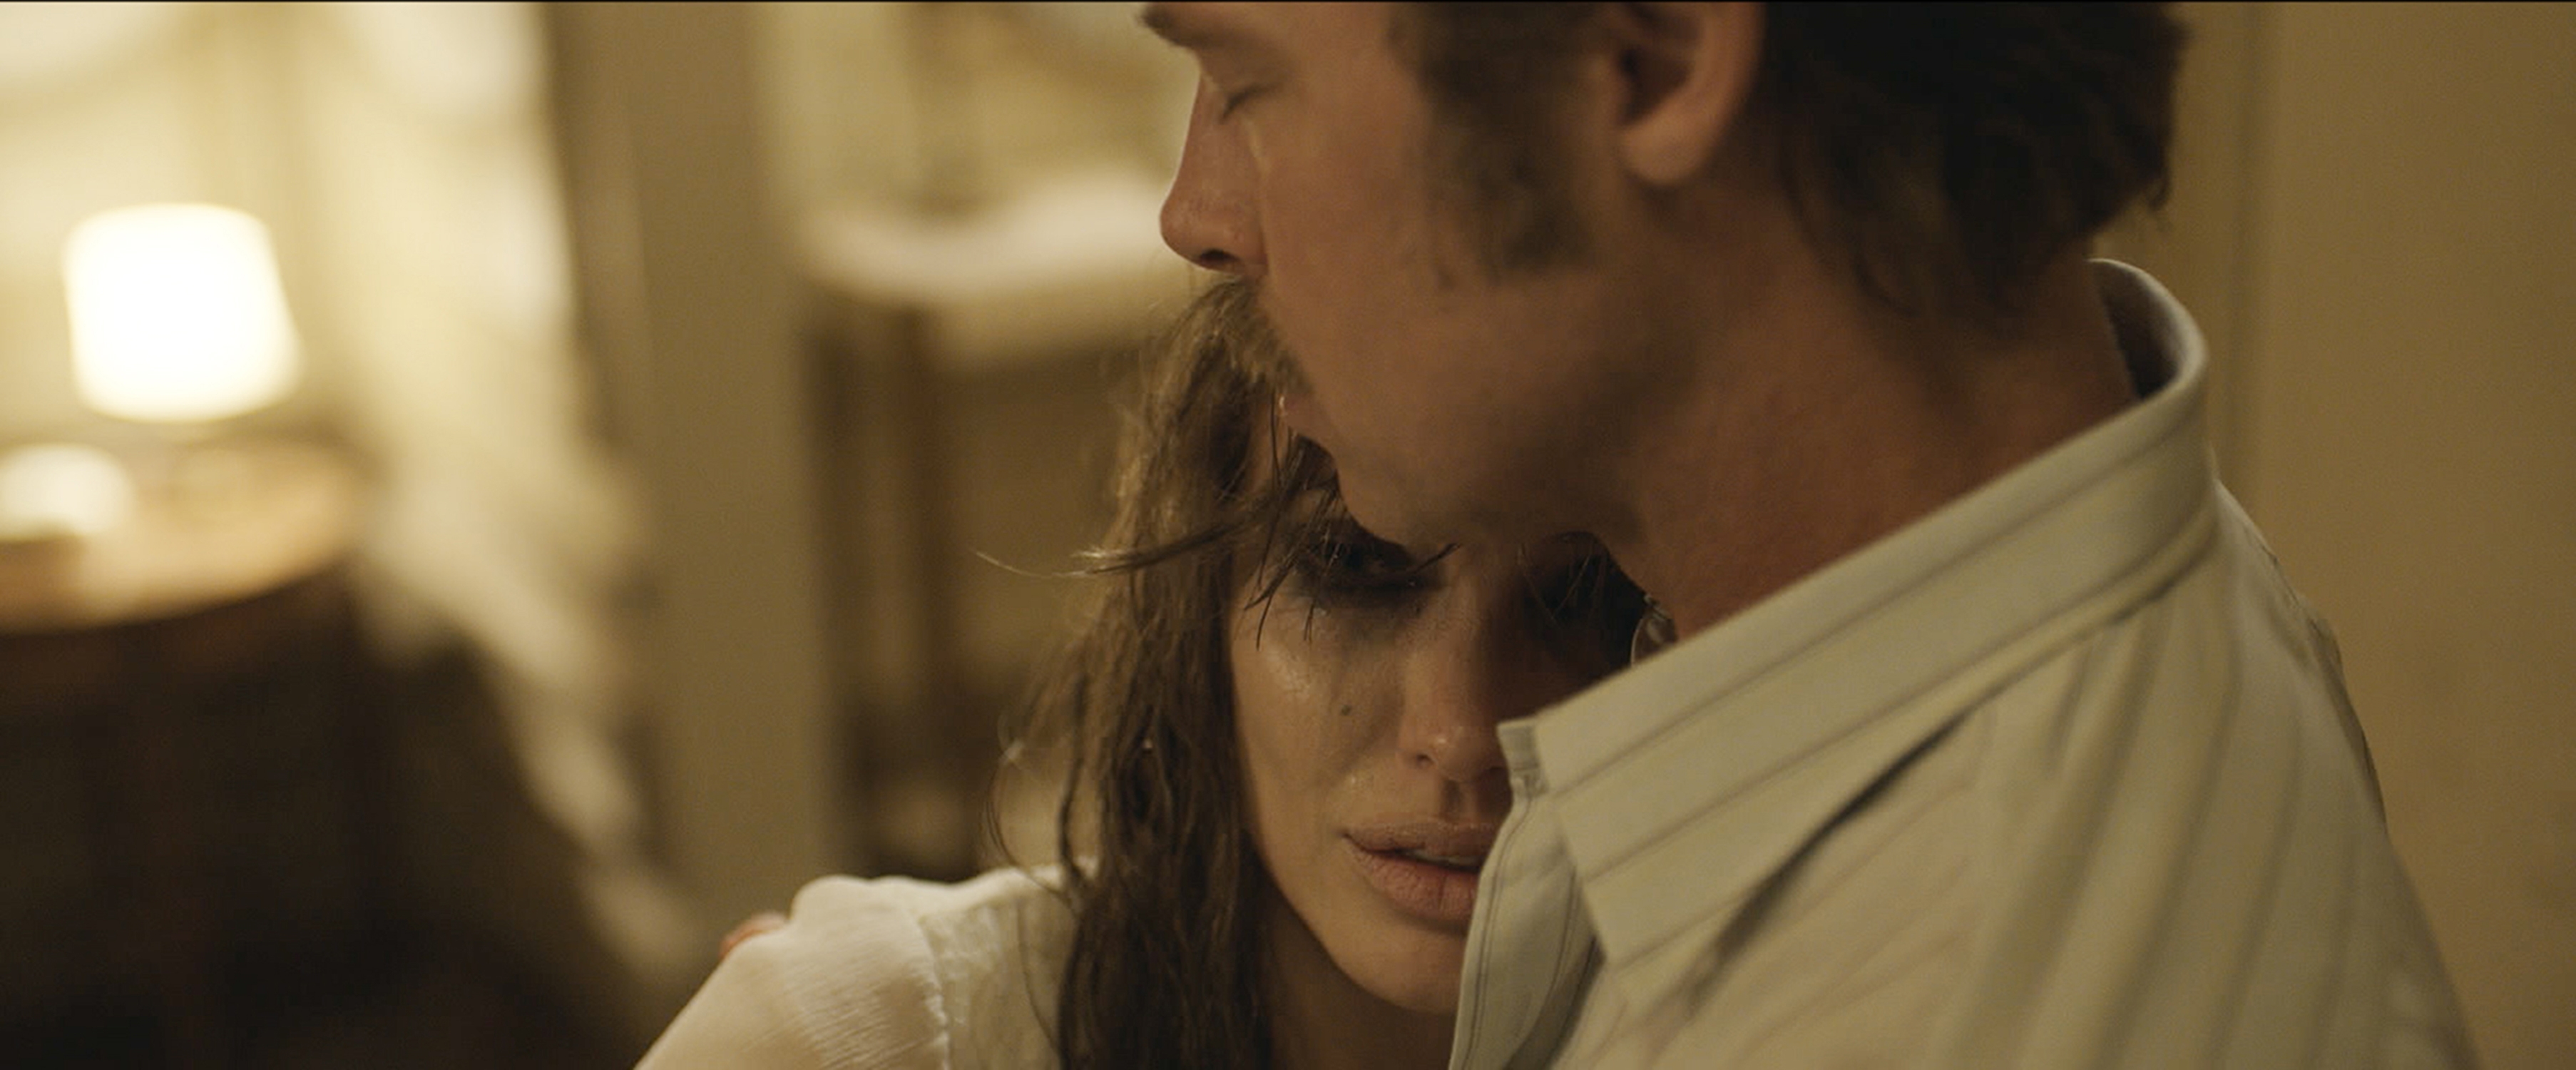 Jolie i Pitt u traileru za "By The Sea"